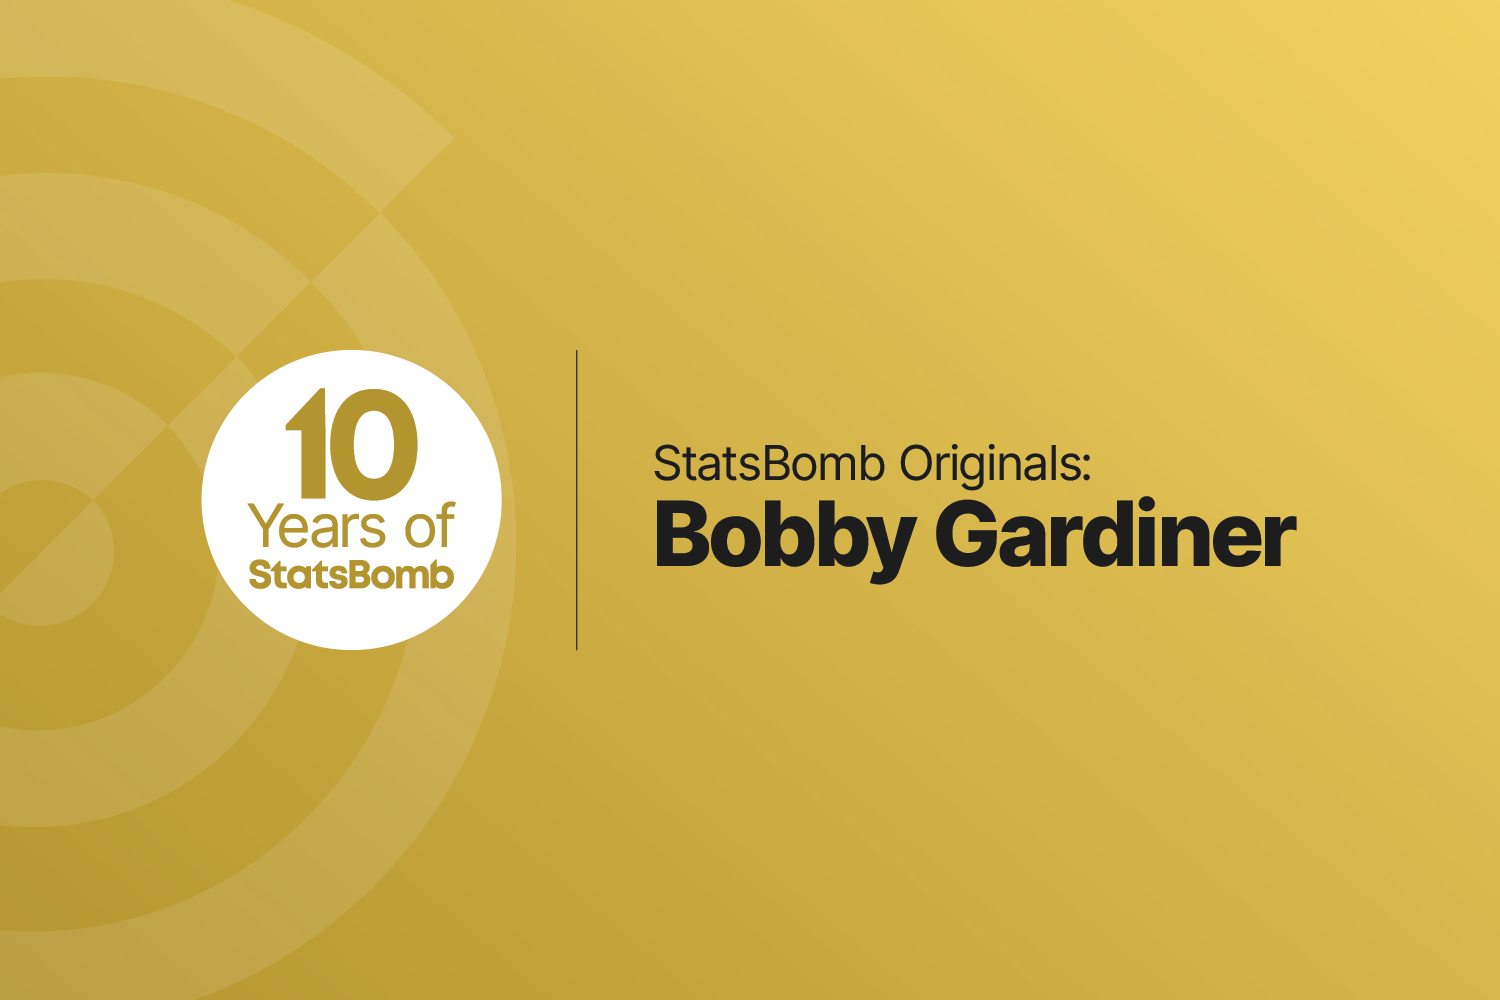 StatsBomb Originals: Bobby Gardiner